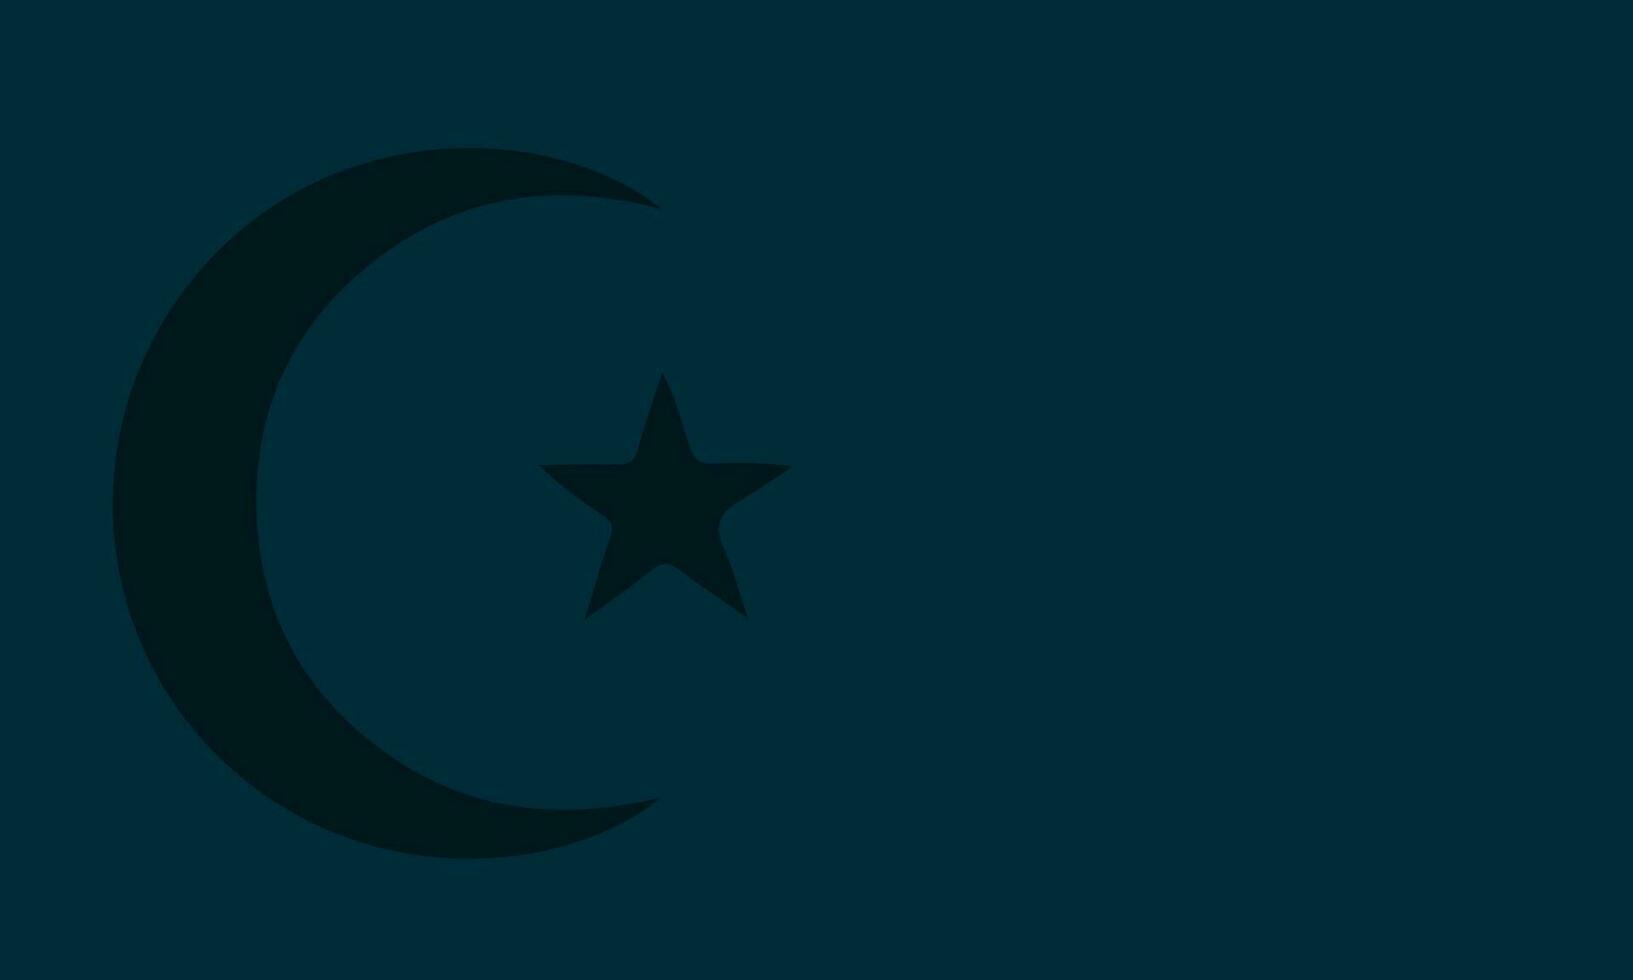 islamico sfondo con Luna, stella, e copia spazio per testo. vettore illustrazione